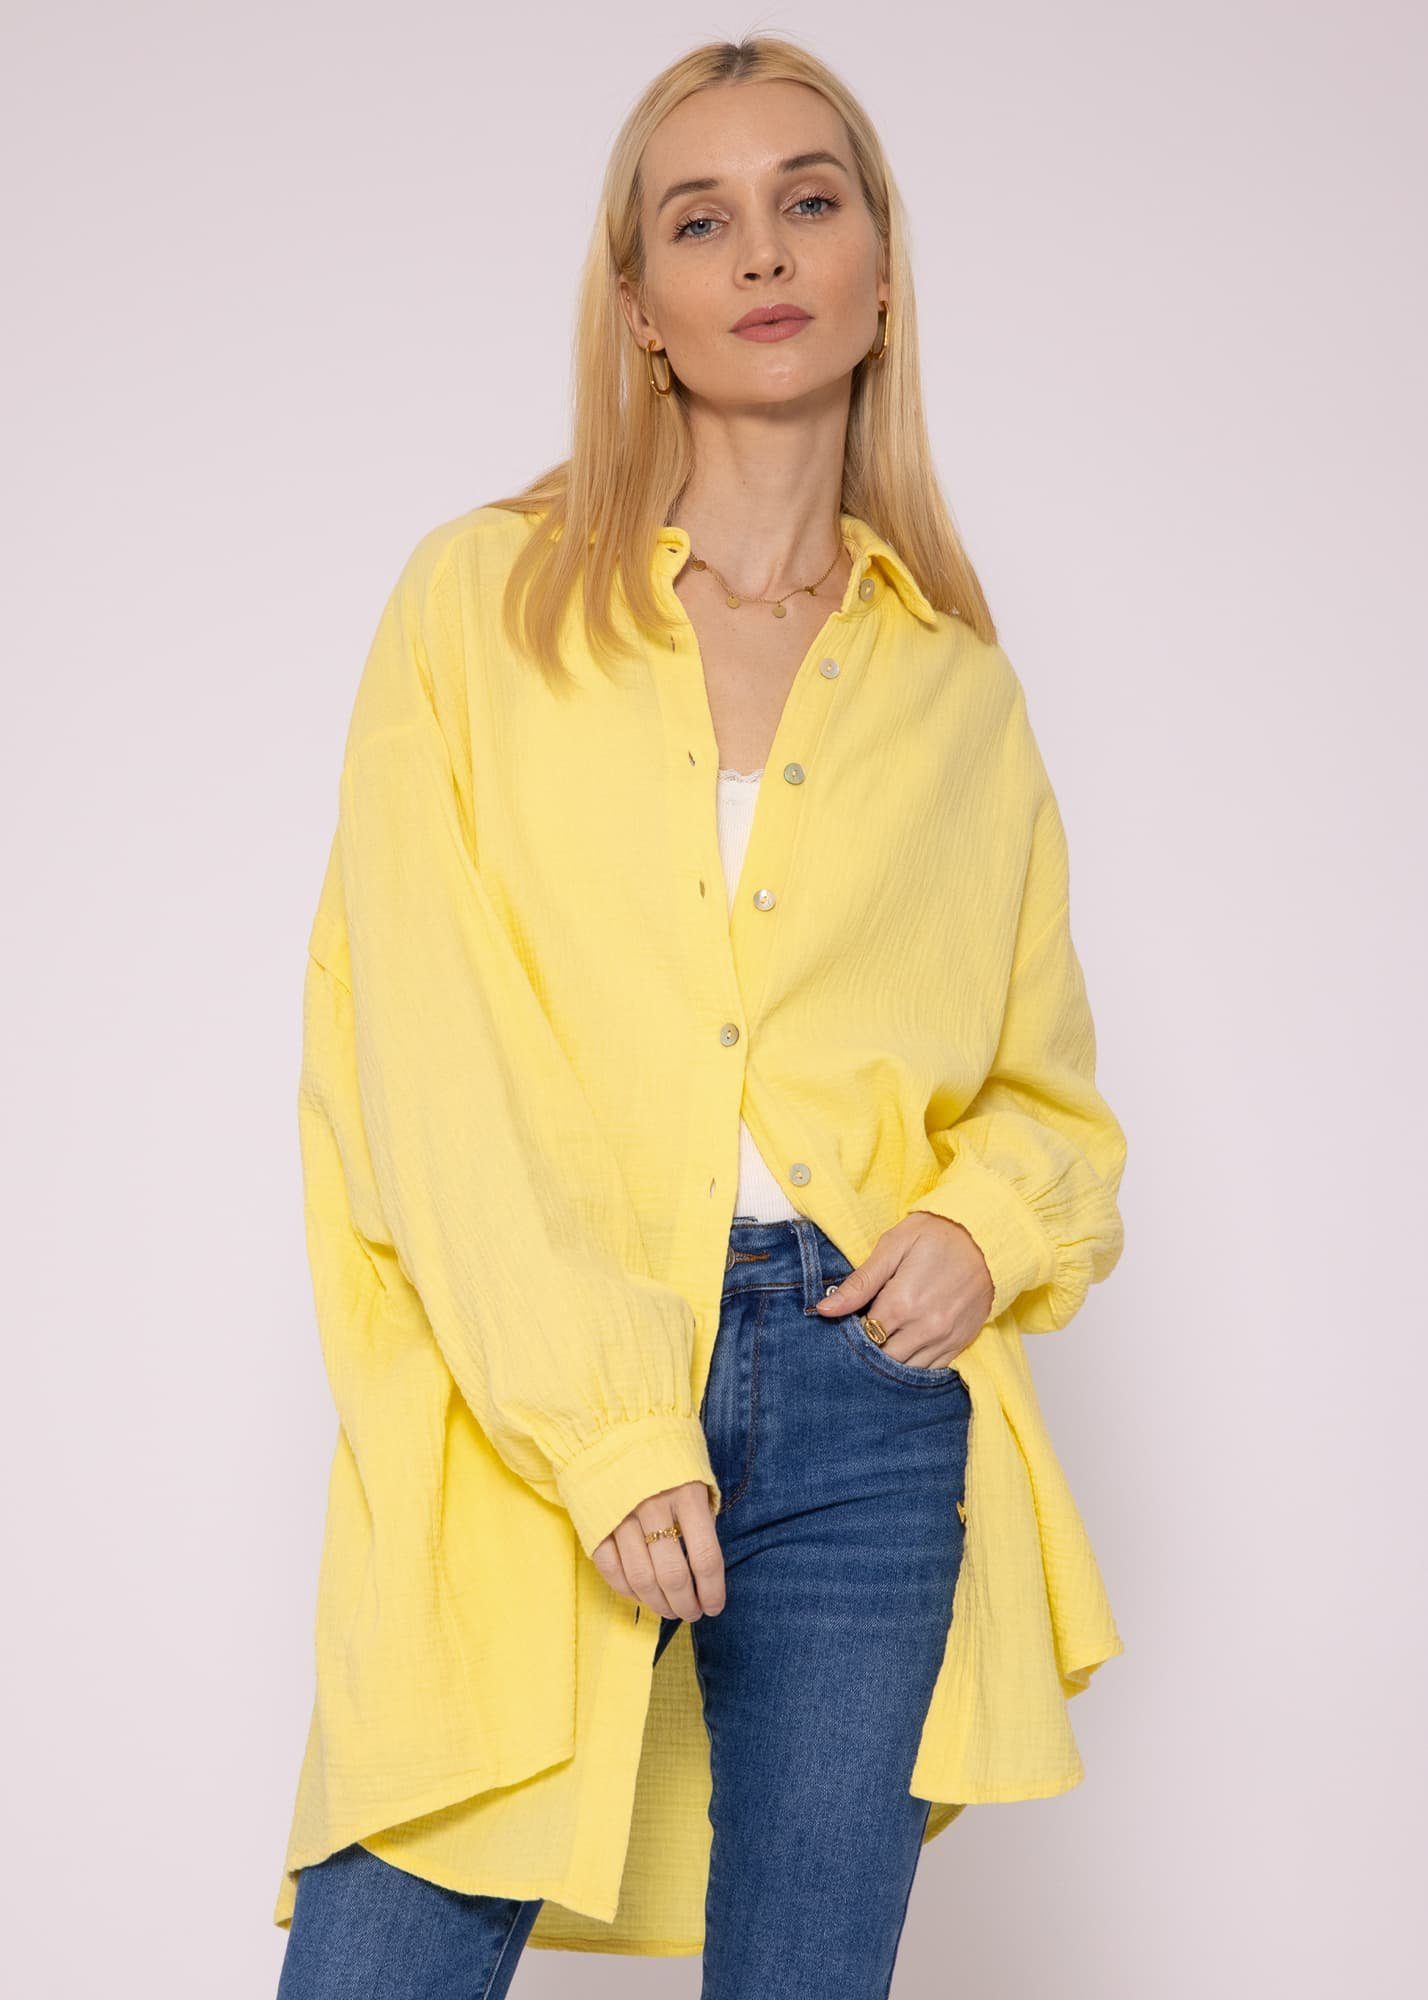 billig produzieren SASSYCLASSY Longbluse Oversize Musselin Bluse Langarm mit One lang V-Ausschnitt, (Gr. 36-48) Damen Gelb aus Hemdbluse Size Baumwolle